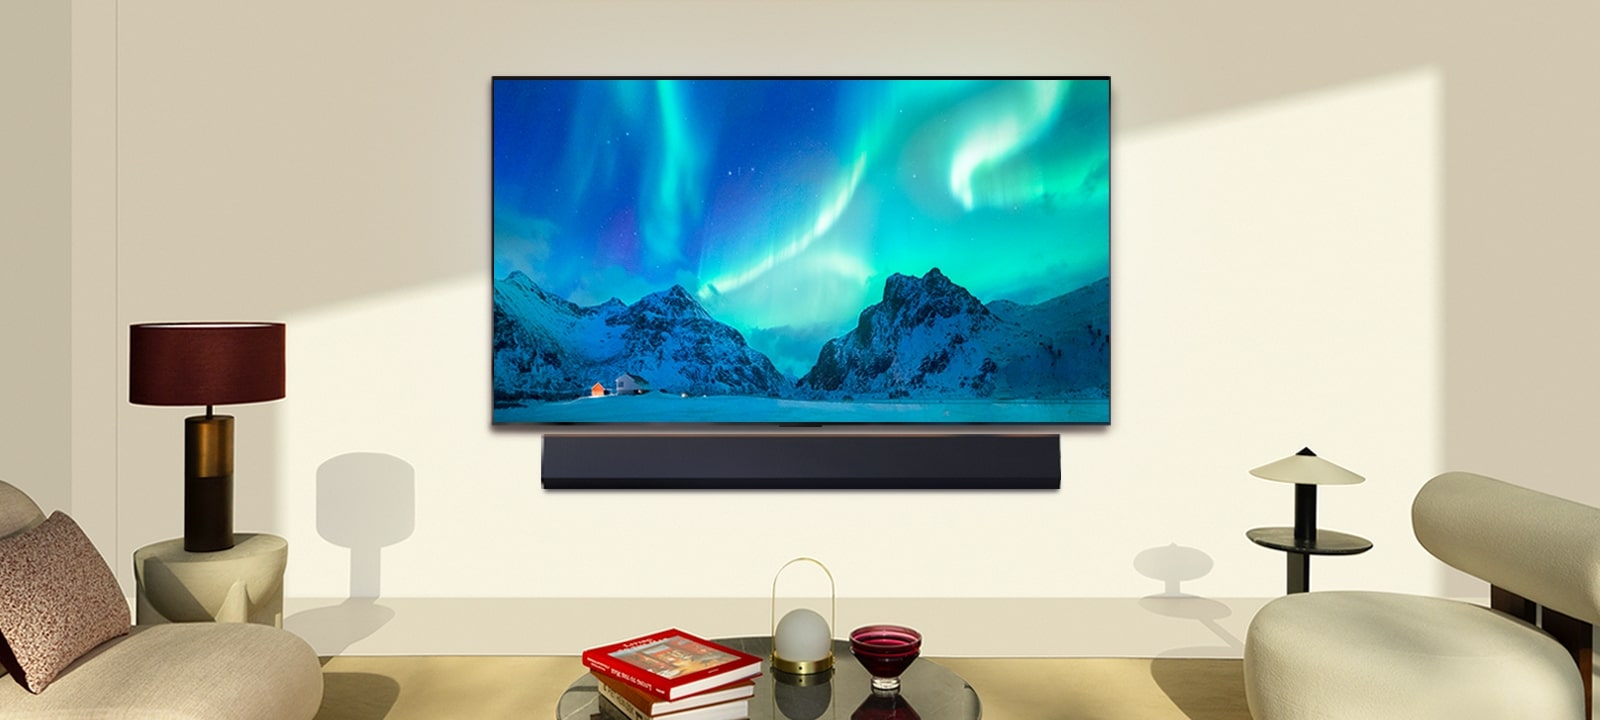 LG OLED TV a LG Soundbar v moderním obývacím prostoru ve dne. Na obrazovce se zobrazuje obraz polární záře s ideální úrovní jasu.